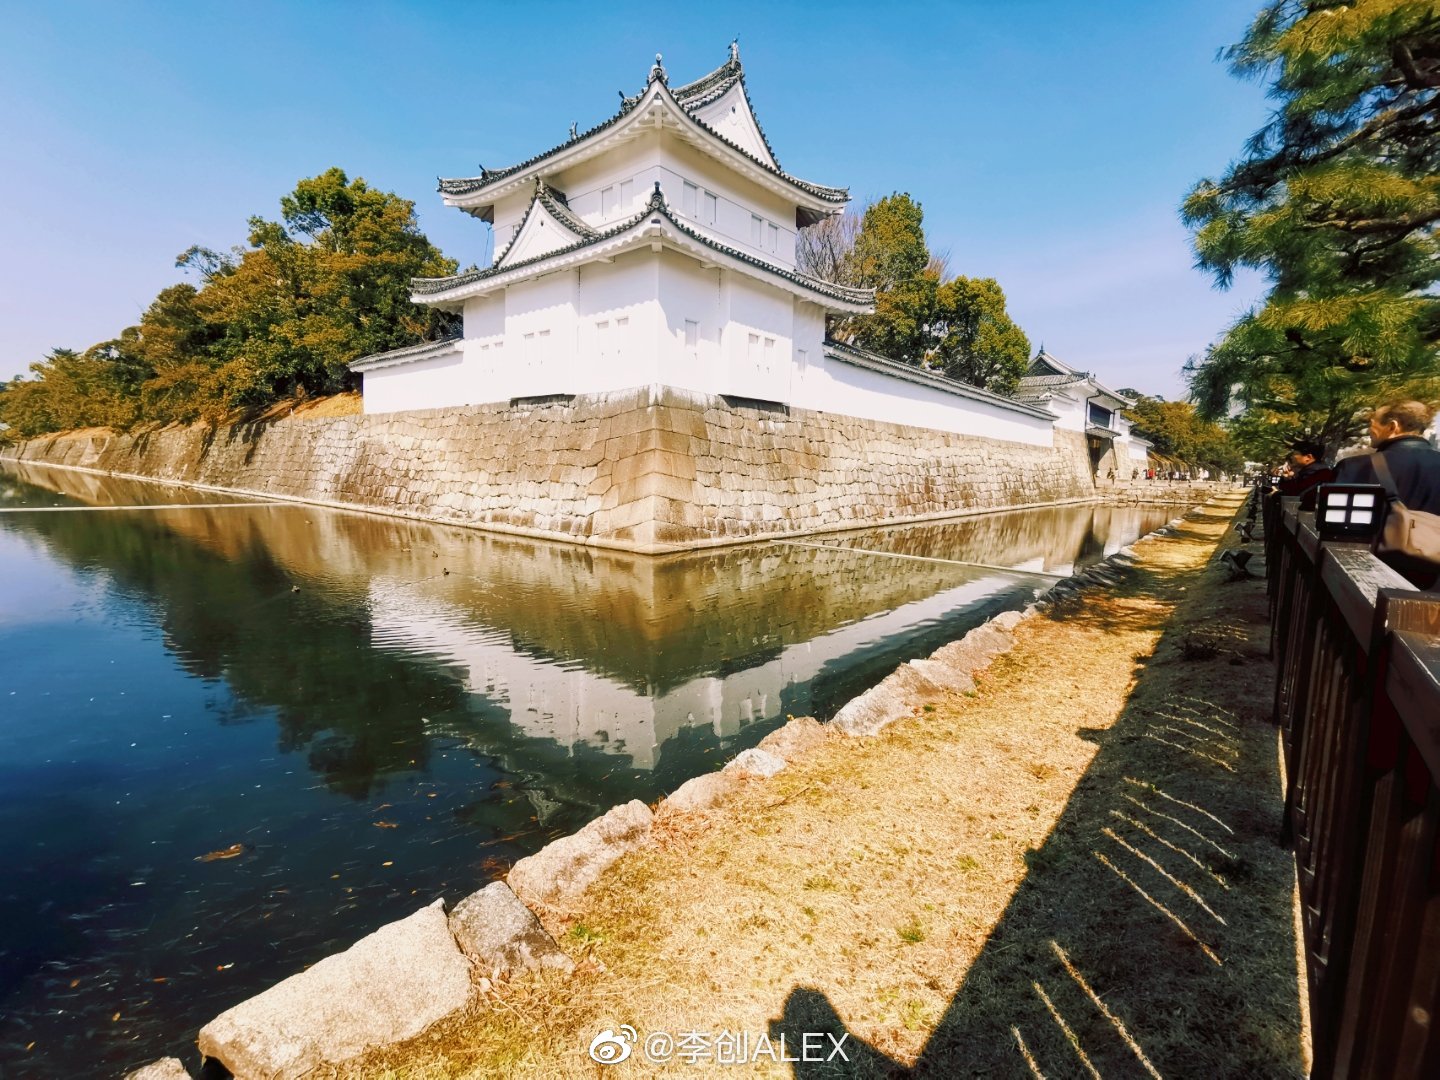 日本京都旅行必体验二条城比金阁寺拍照还要好看的小众景点